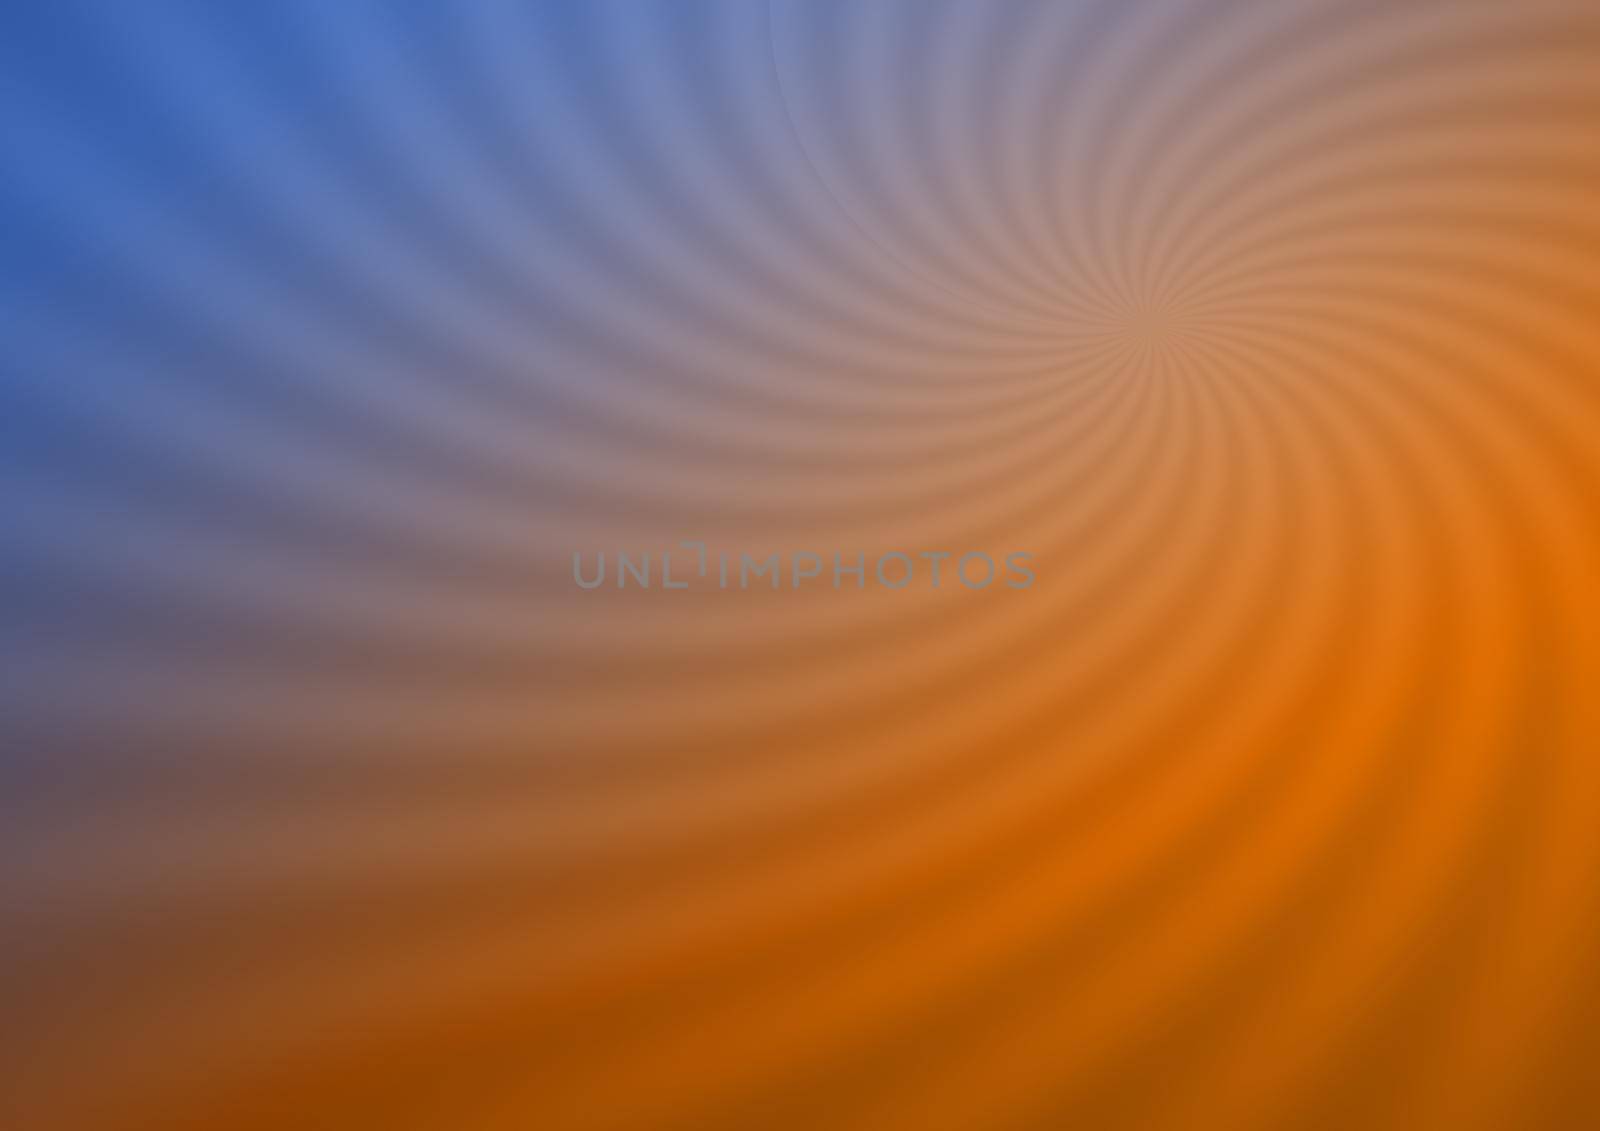 Swirling radial sunburst background. 3D illustration.